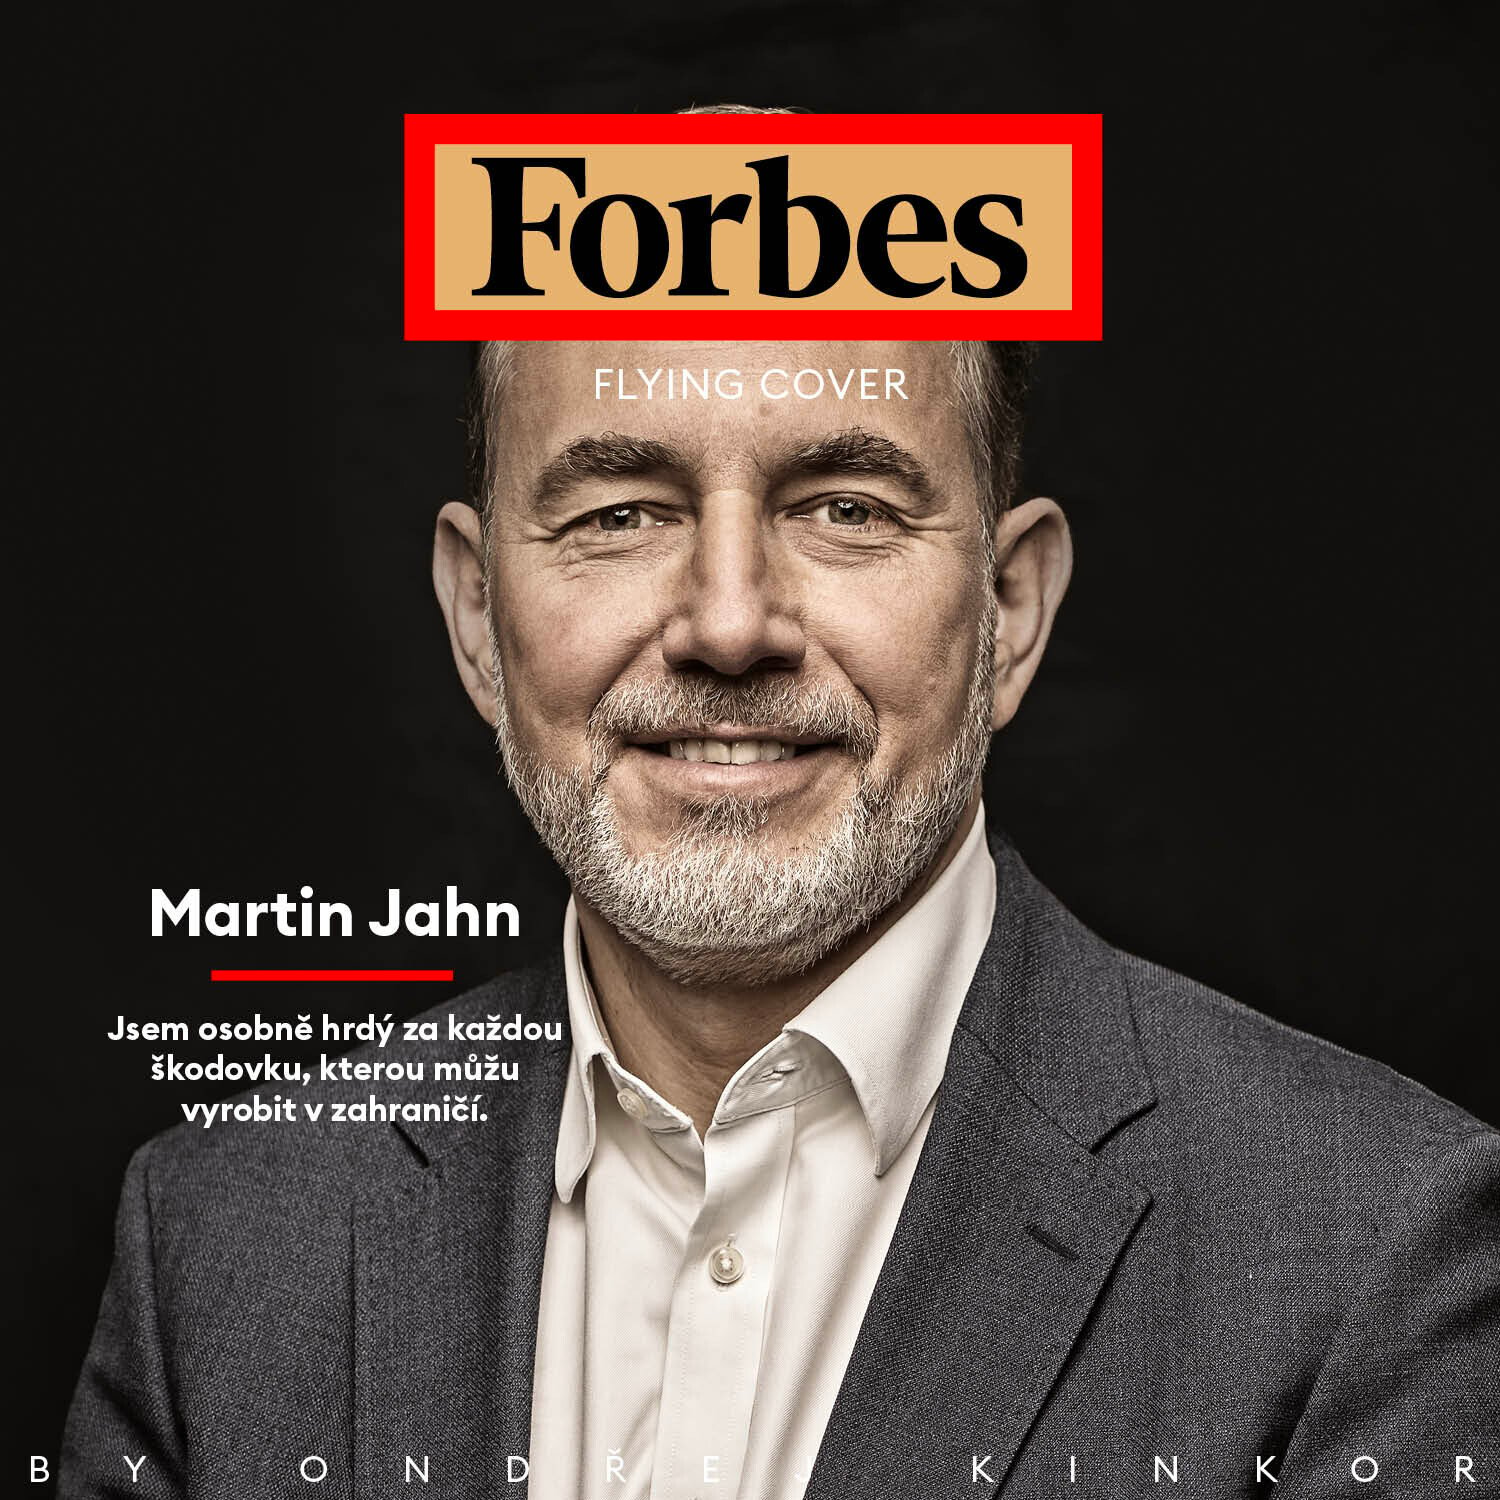 Forbes Flying Cover s Martinem Jahnem